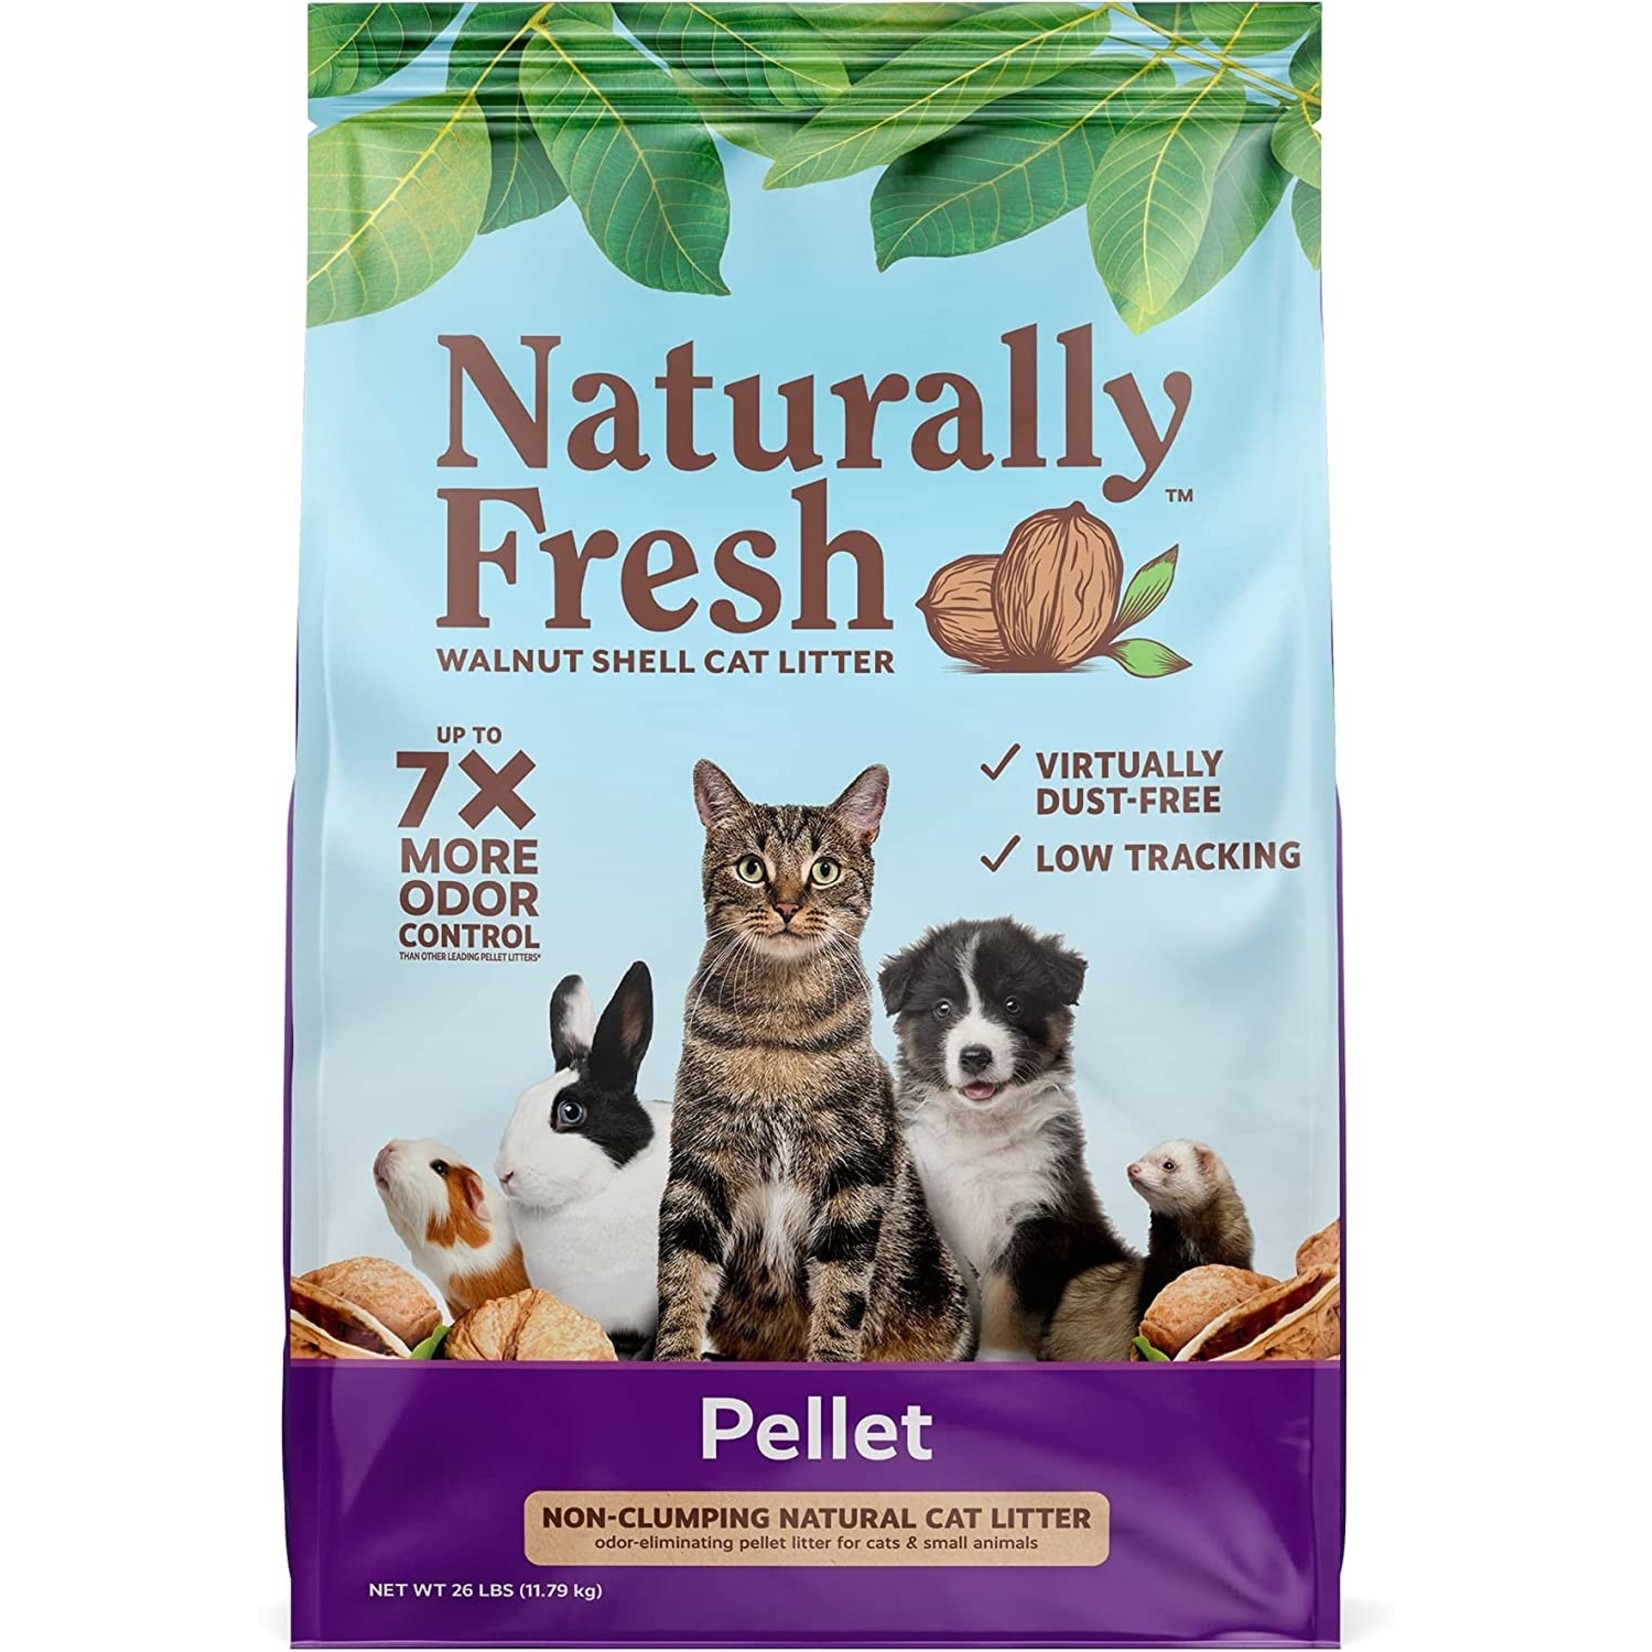 Naturally Fresh Naturally Fresh Pellet Formula Unscented Non-clumping Walnut Cat Litter, 10lbs